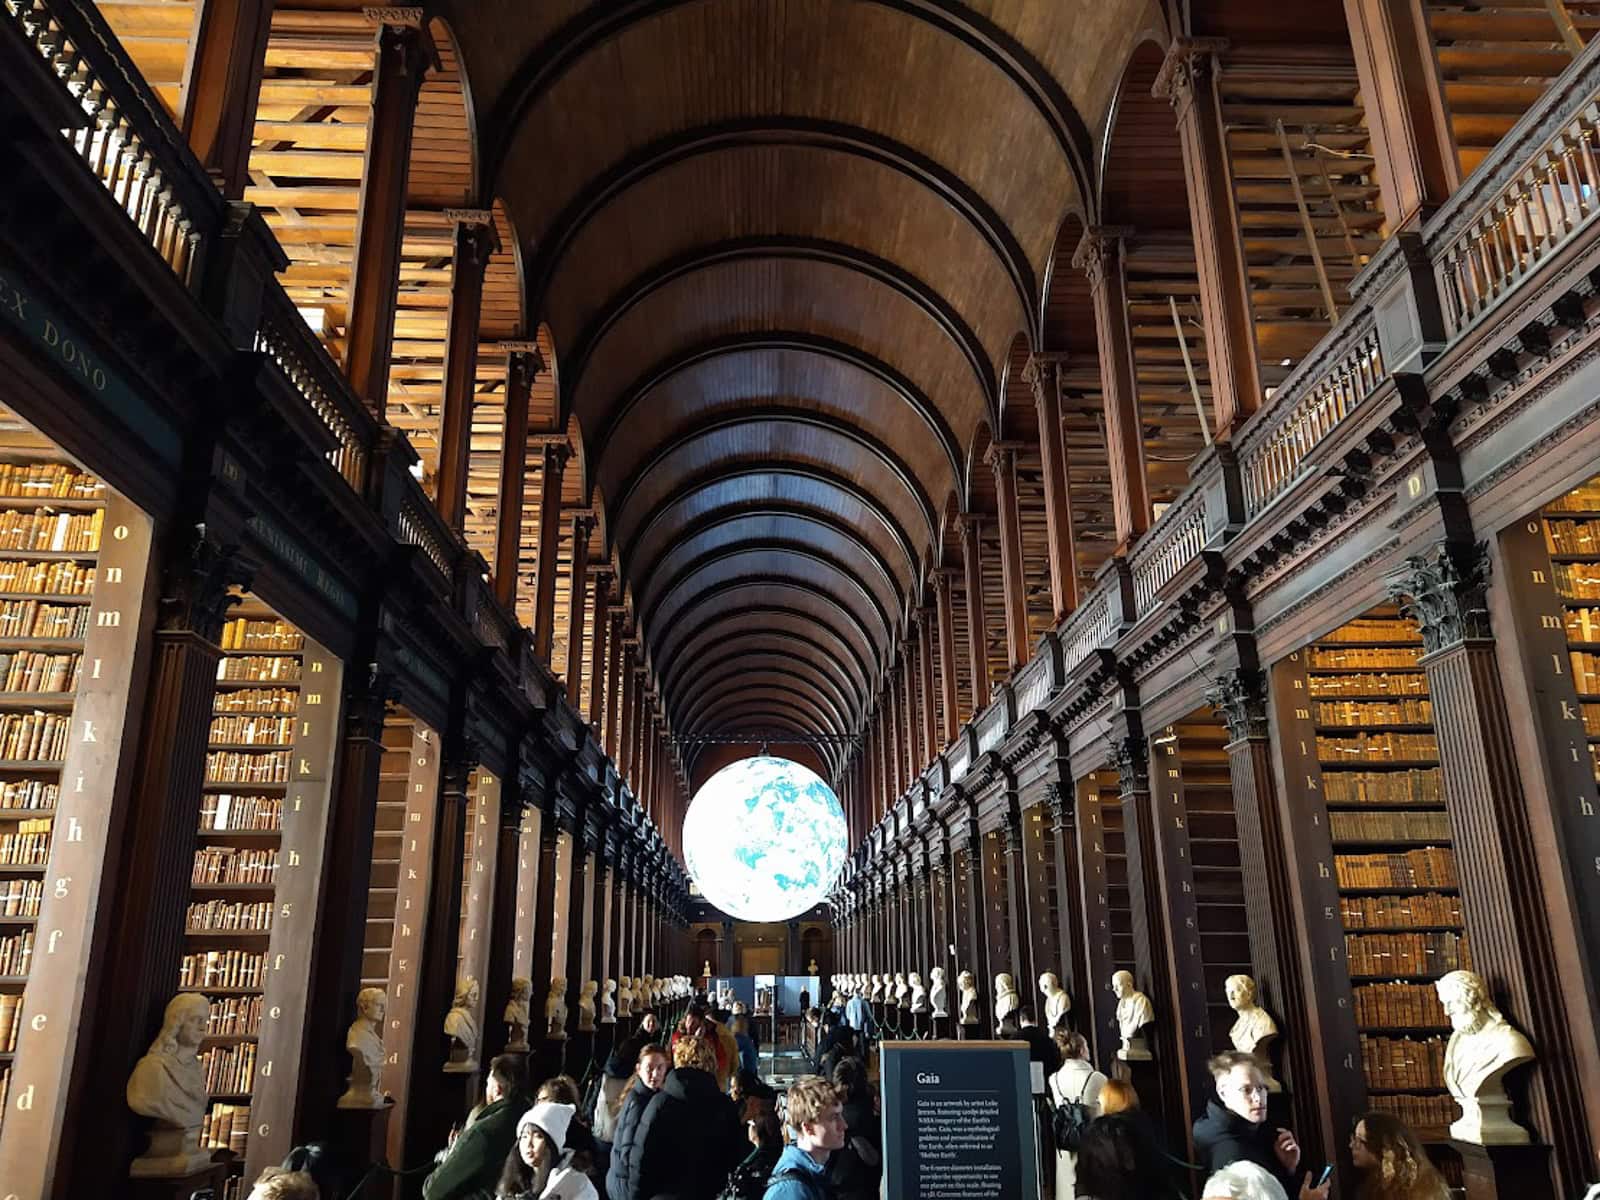 Dublín según el libro: bibliotecas y libaciones